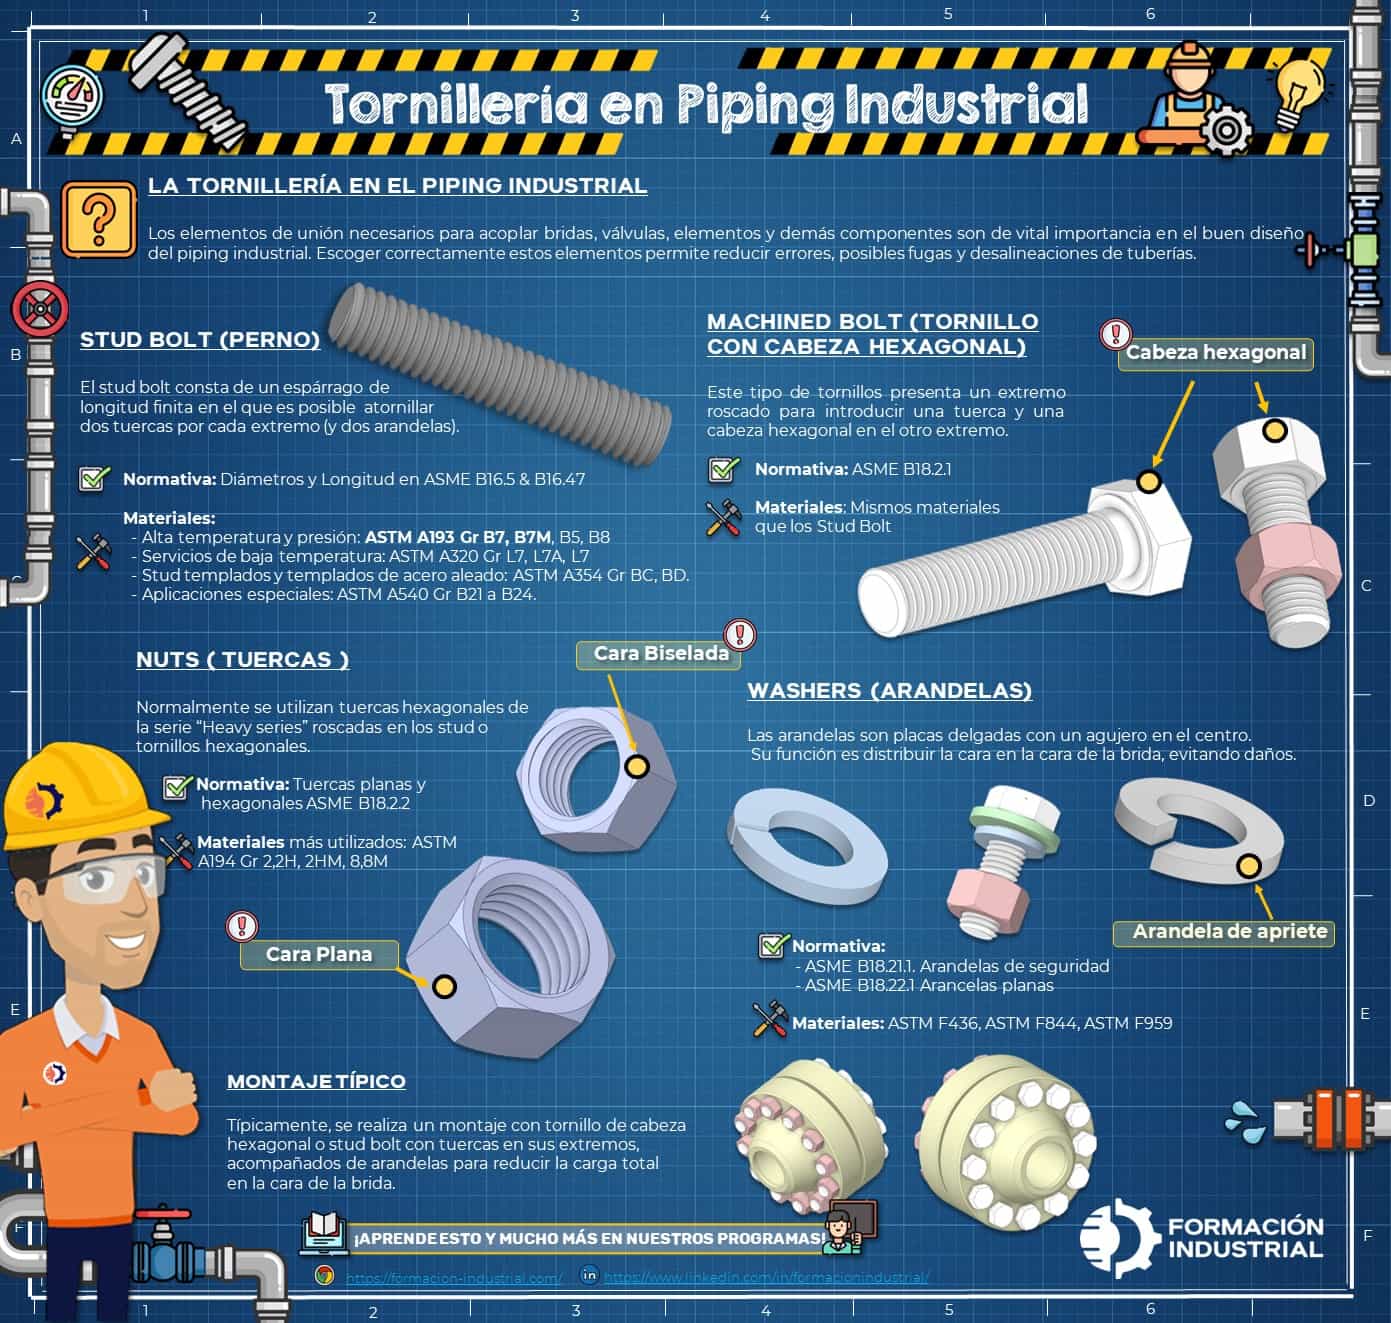 Infografía detallada de la tornillería en piping industrial mostrando pernos, tuercas y arandelas.